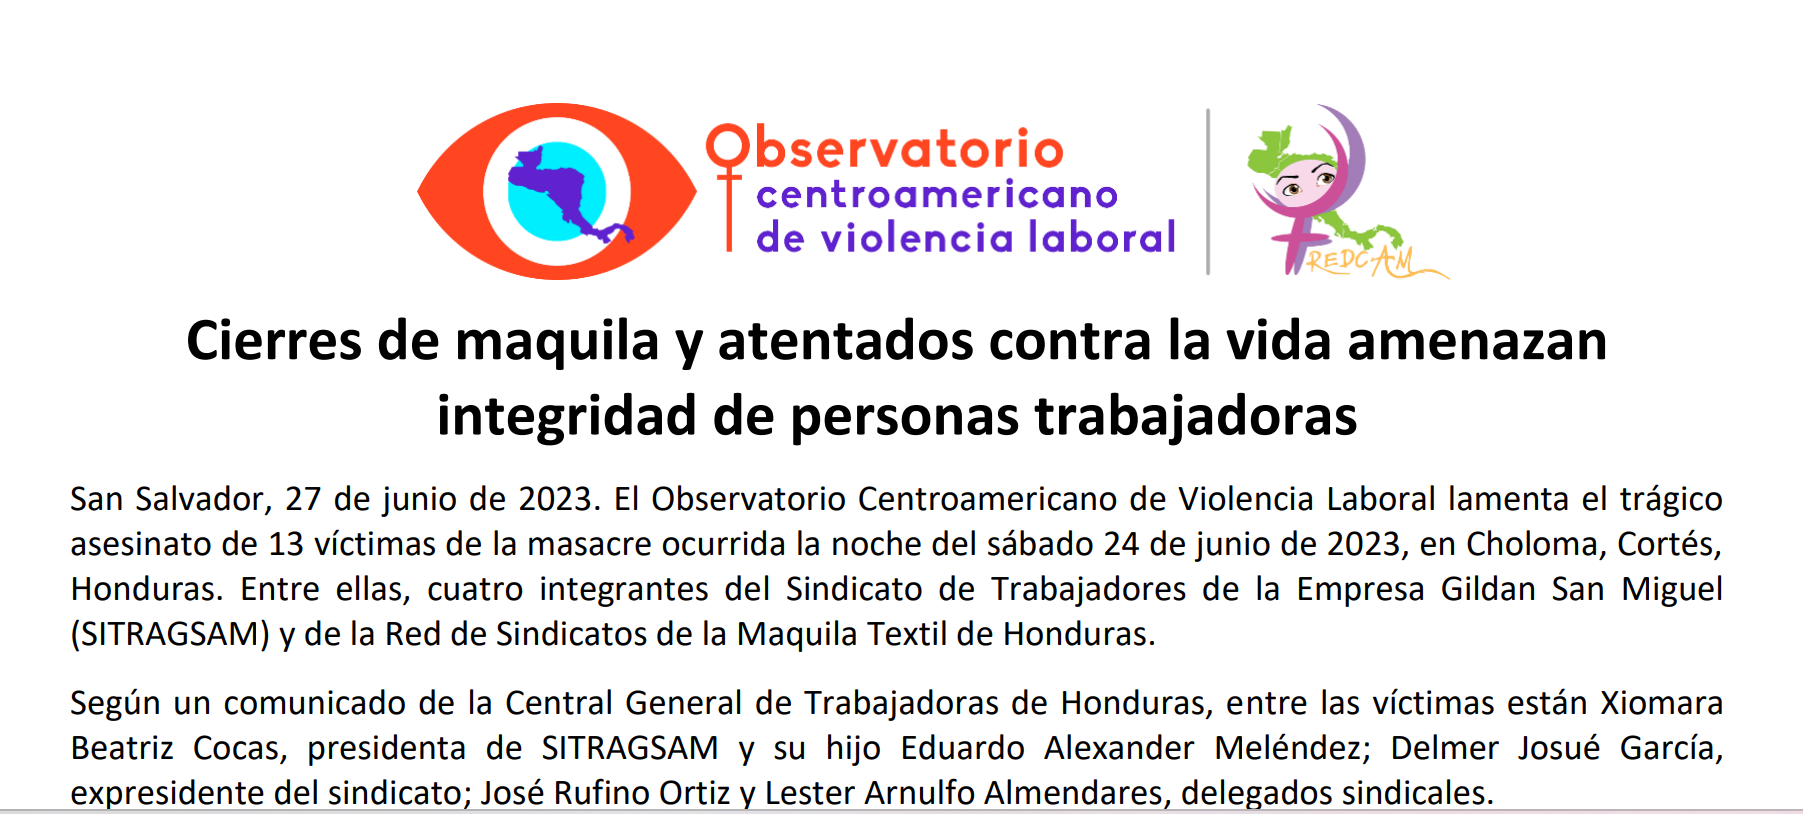 COMUNICADO REDCAM ante los cierres de maquilas y atentados contra la vida de personas trabajadoras en Honduras